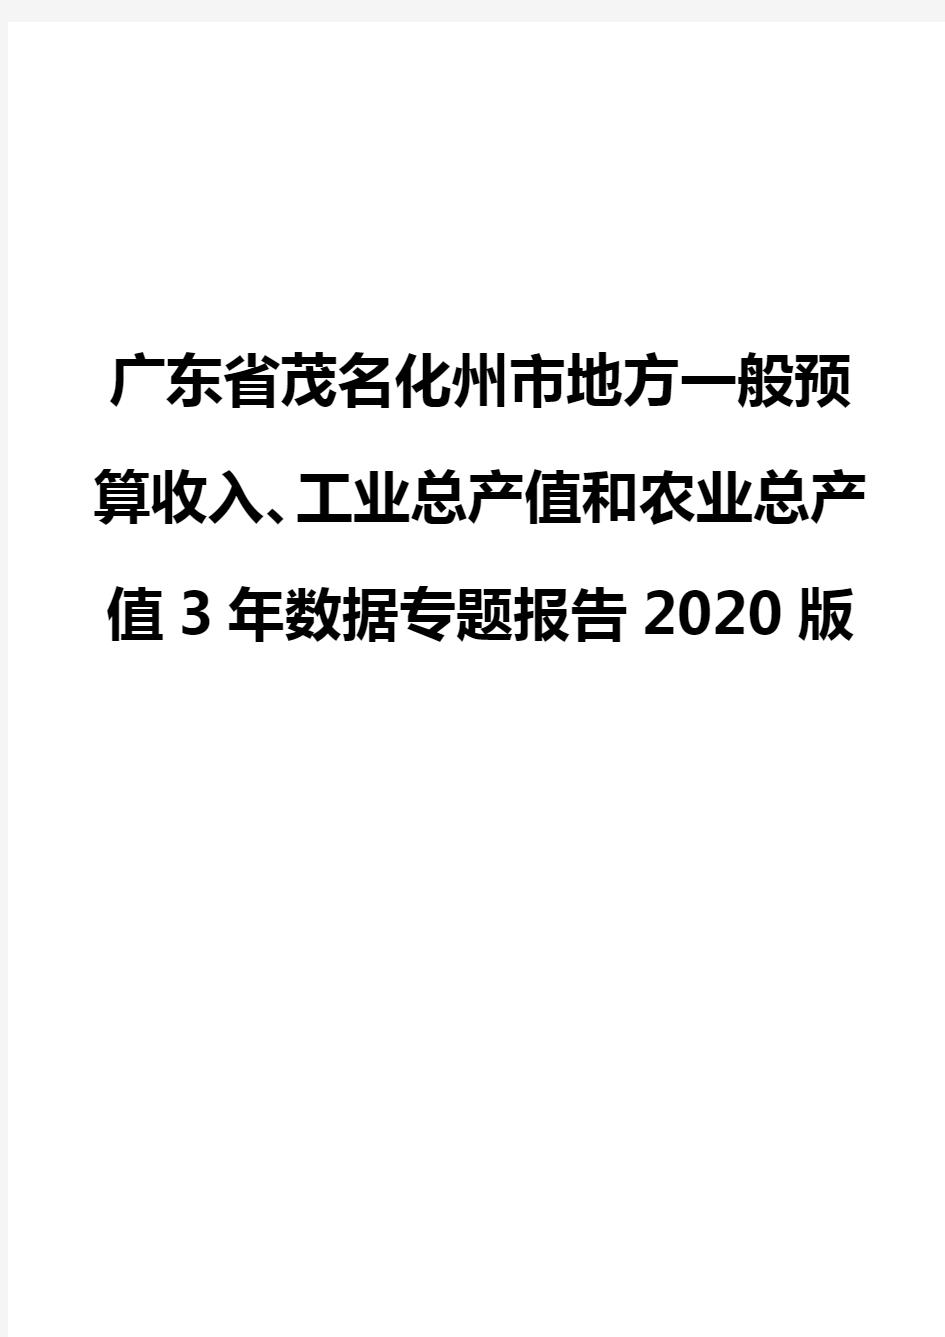 广东省茂名化州市地方一般预算收入、工业总产值和农业总产值3年数据专题报告2020版